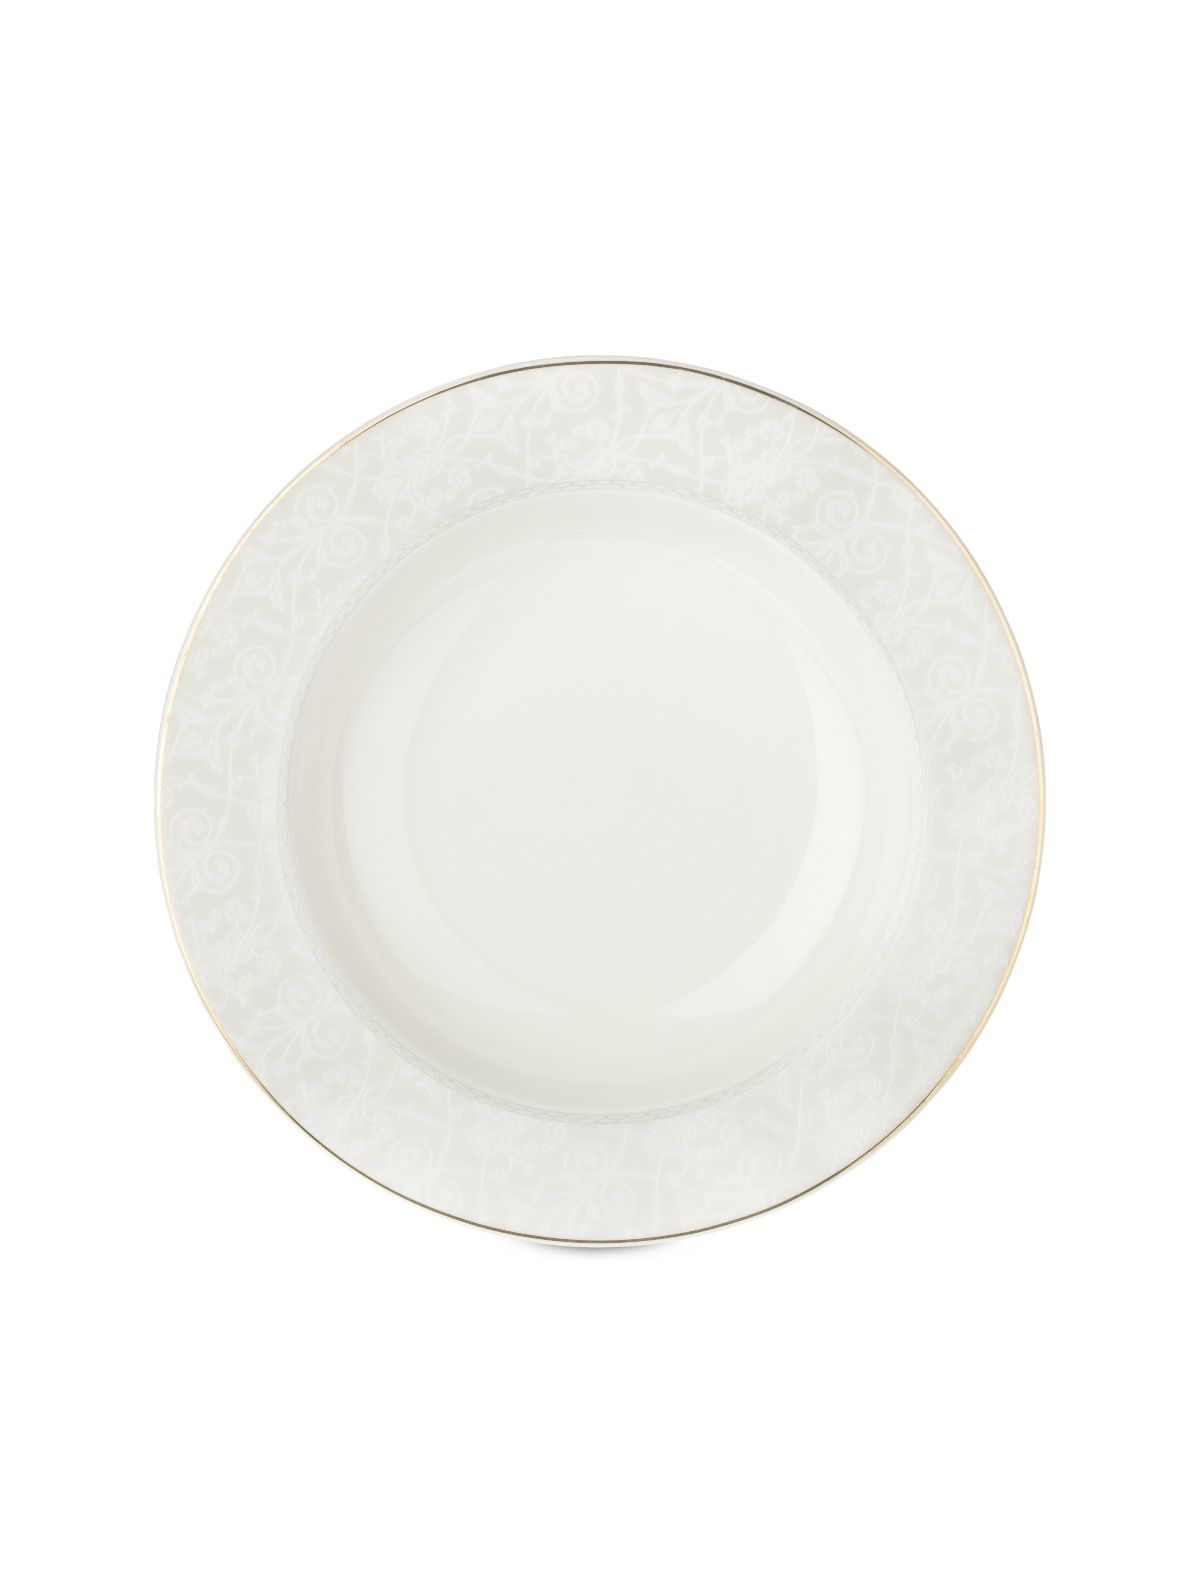 Тарелка суповая ALLURE 21.5см FIORETTA TDP622 тарелка суповая fioretta wood orange tdp441 20см